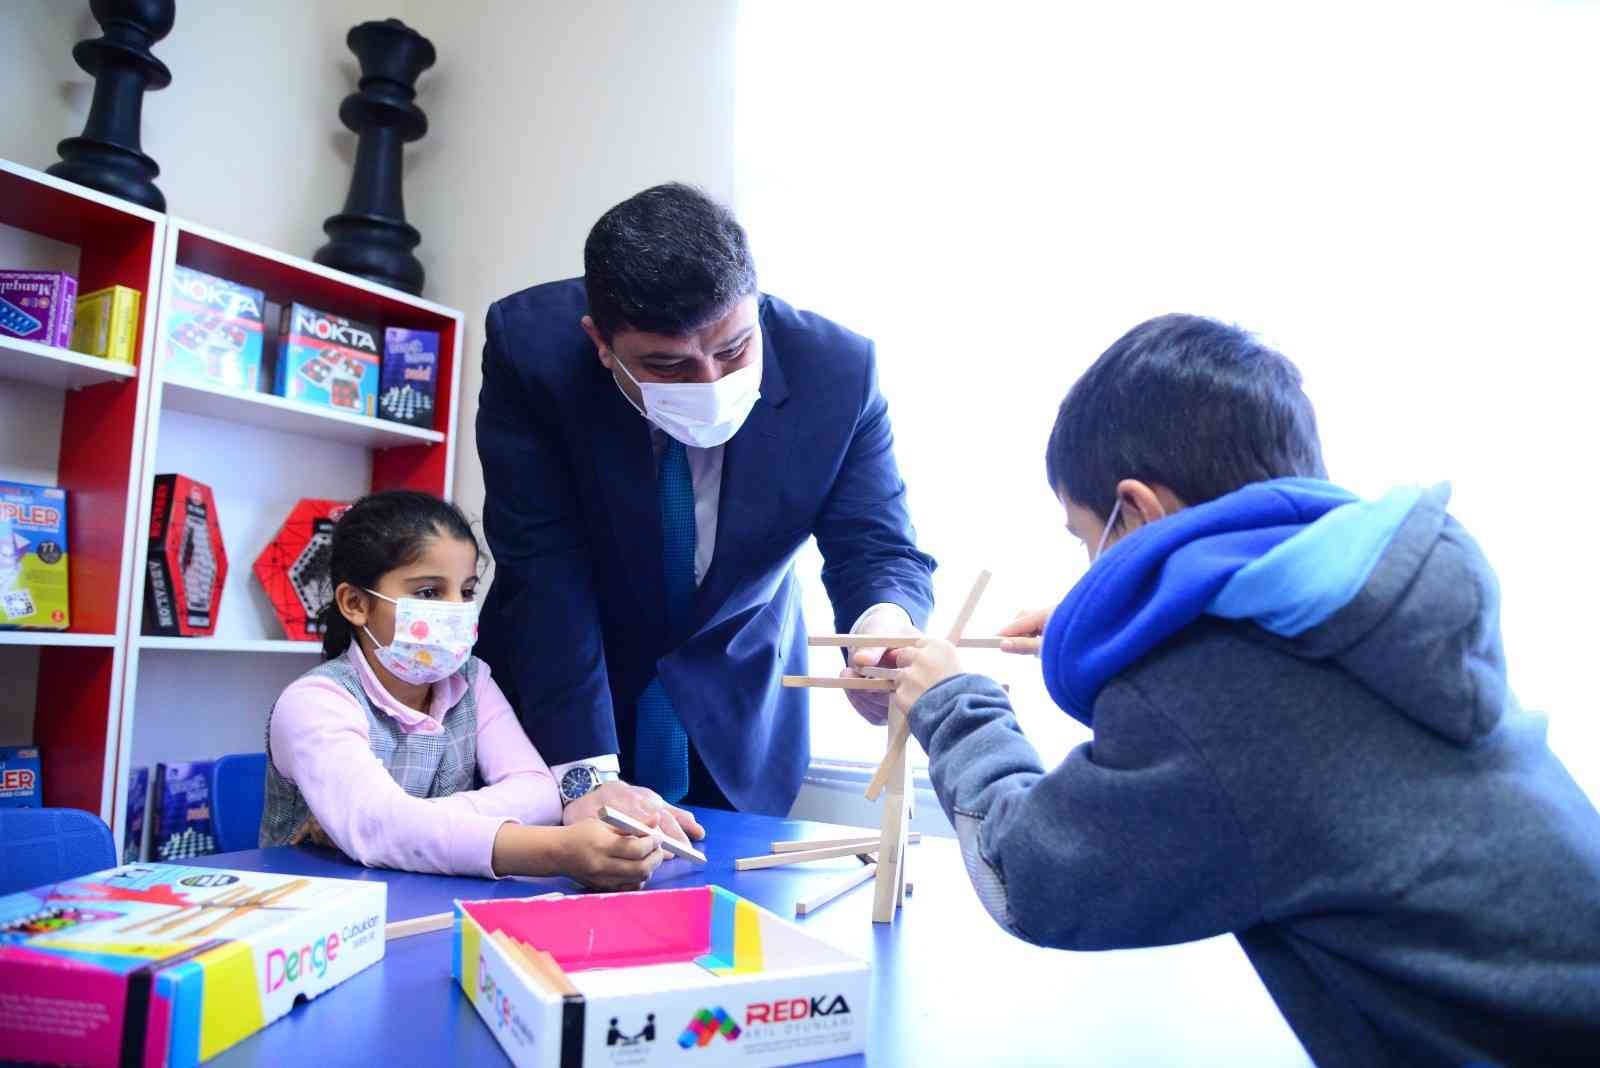 Kahramankazan Belediyesi’nden ilkokula kütüphane, zeka oyunları ve yaşam beceri atölyesi #ankara